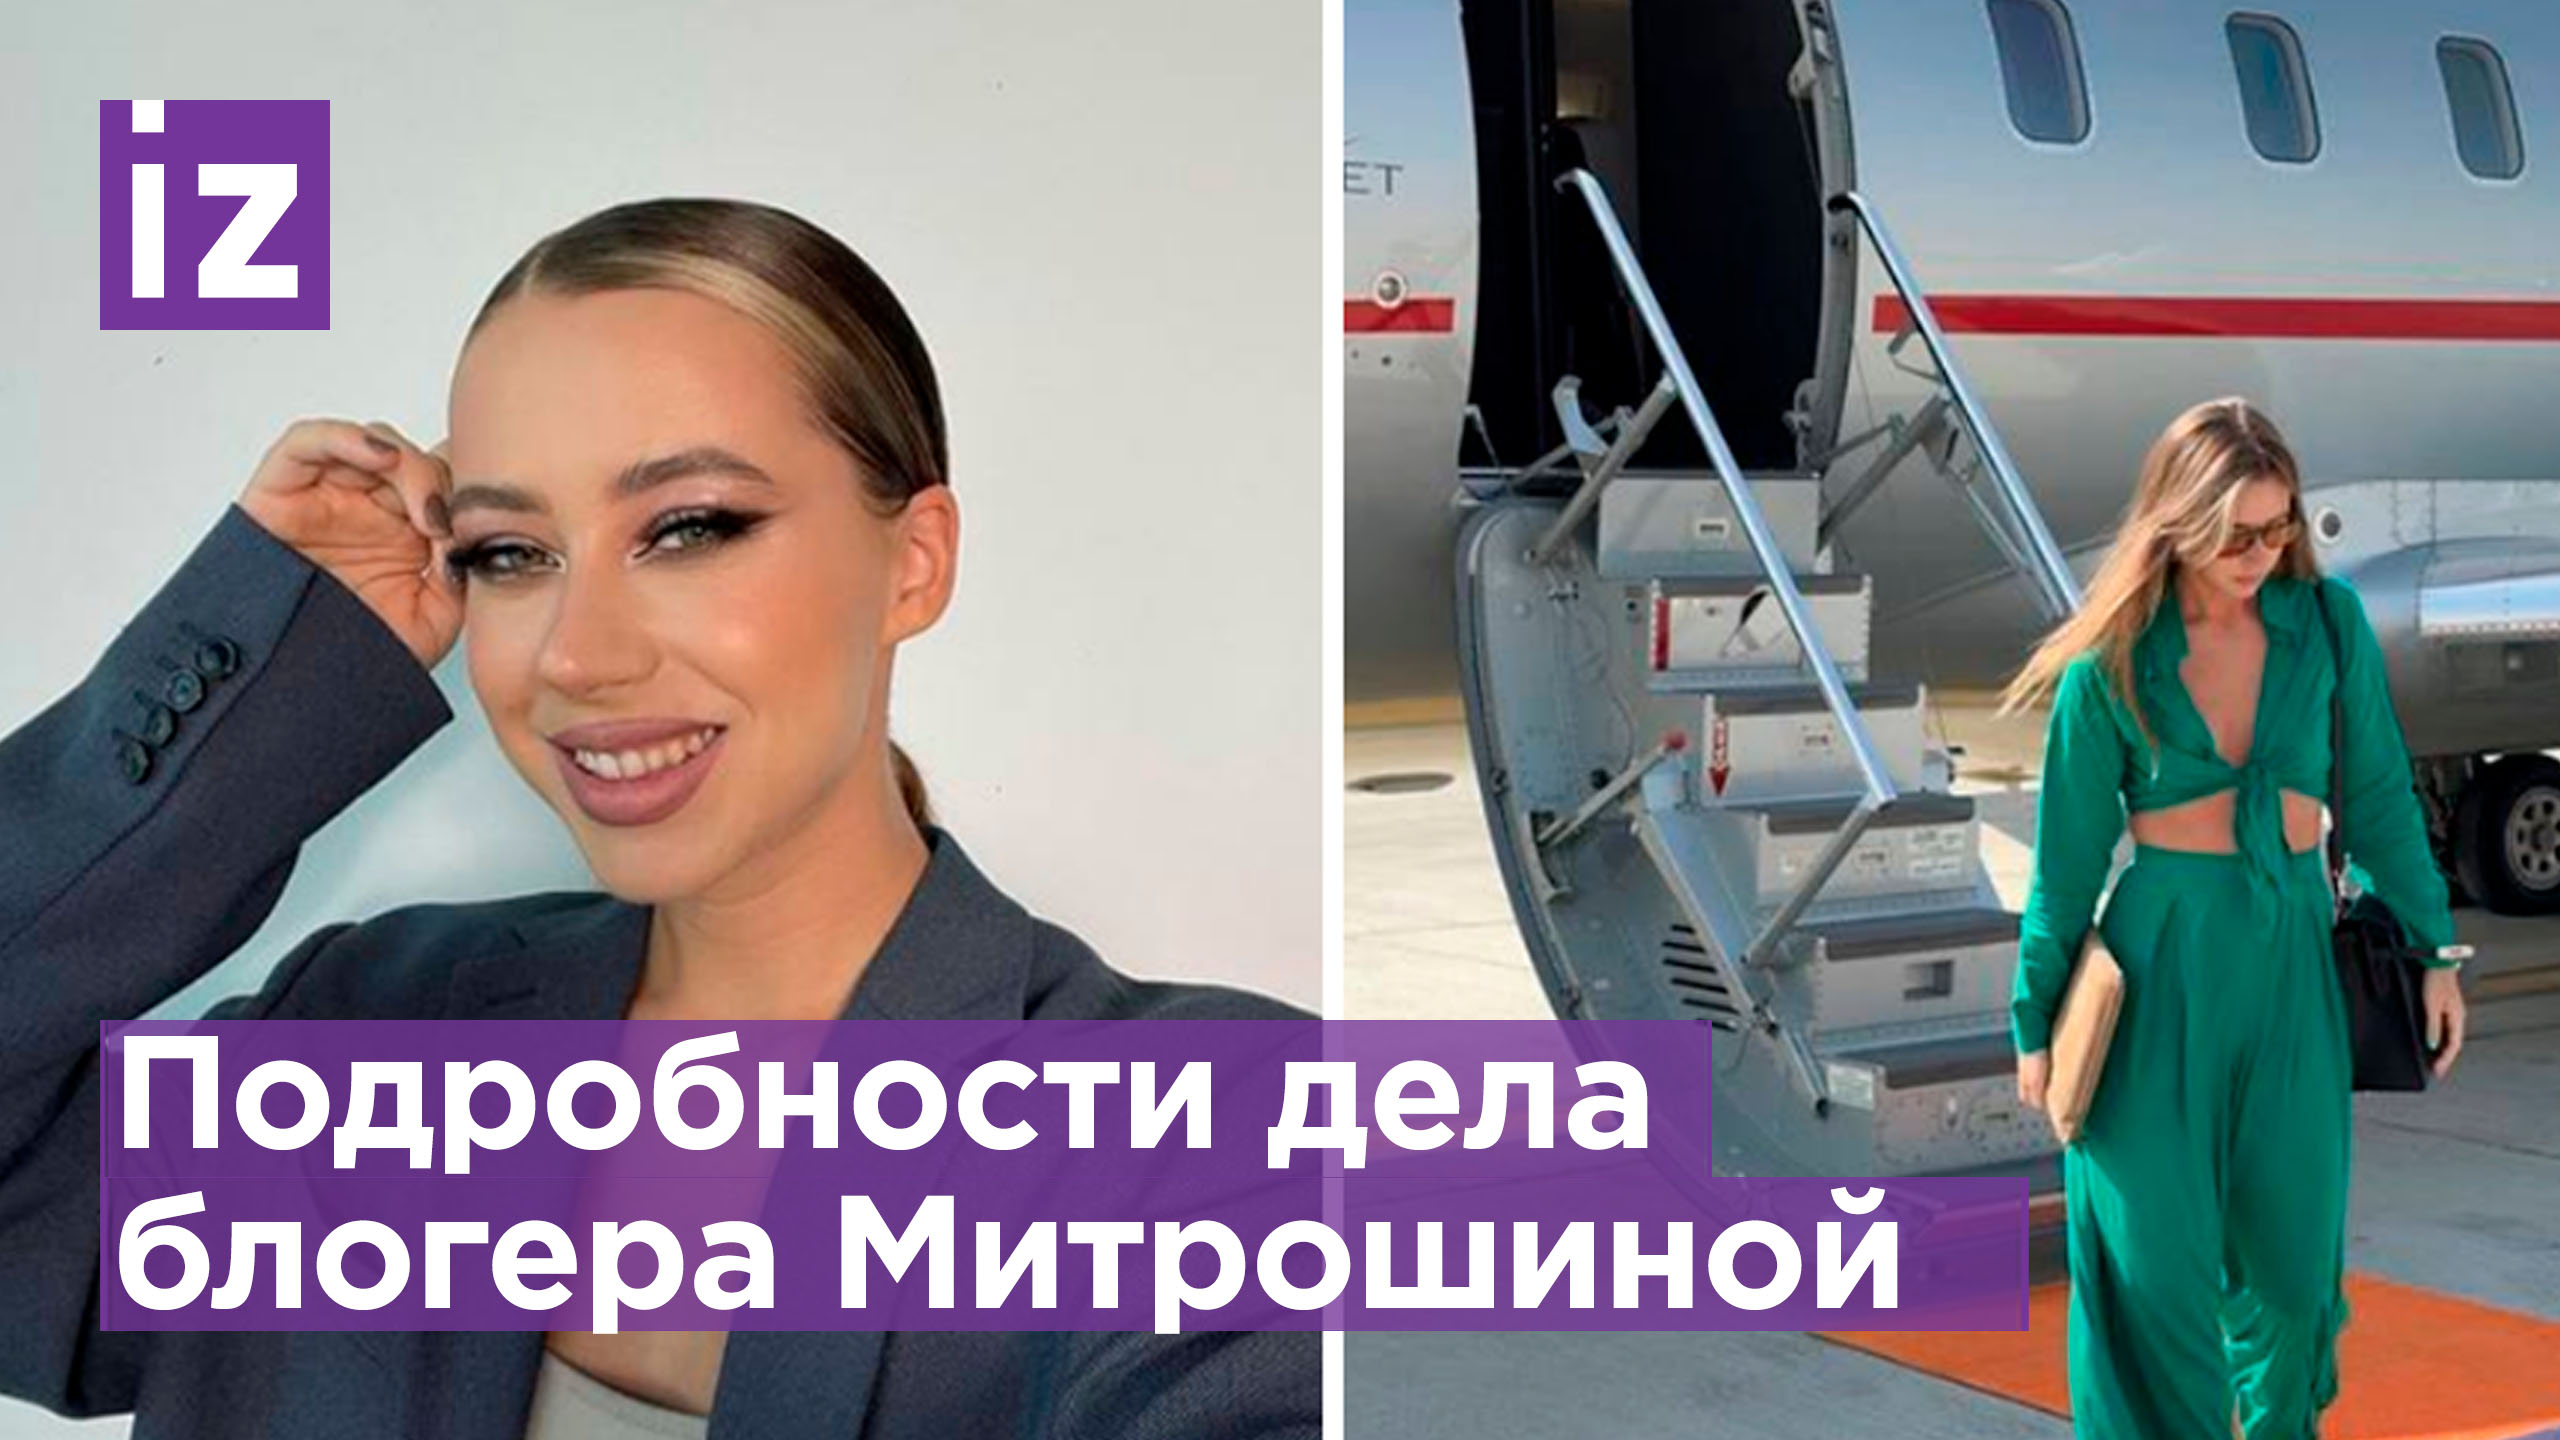 Блогера Митрошину обвинили в уклонении от уплаты налогов на 120 млн: девушка уехала из России